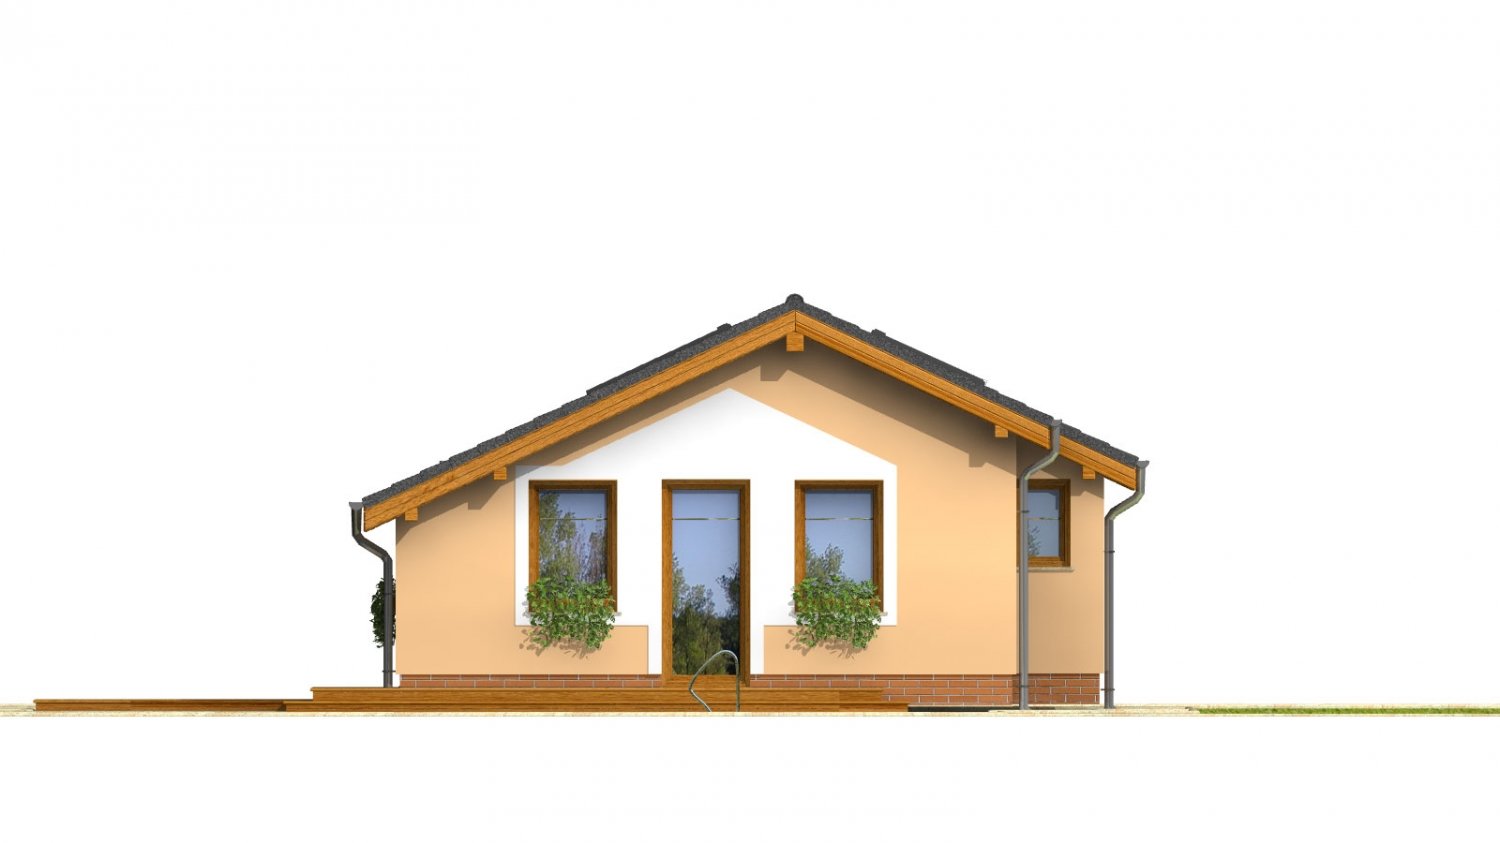 Pohľad 4. - Levný úzký dům na malý pozemek se sedlovou střechou, prosvětlený střešními okny. Efekt podkroví na přízemí.